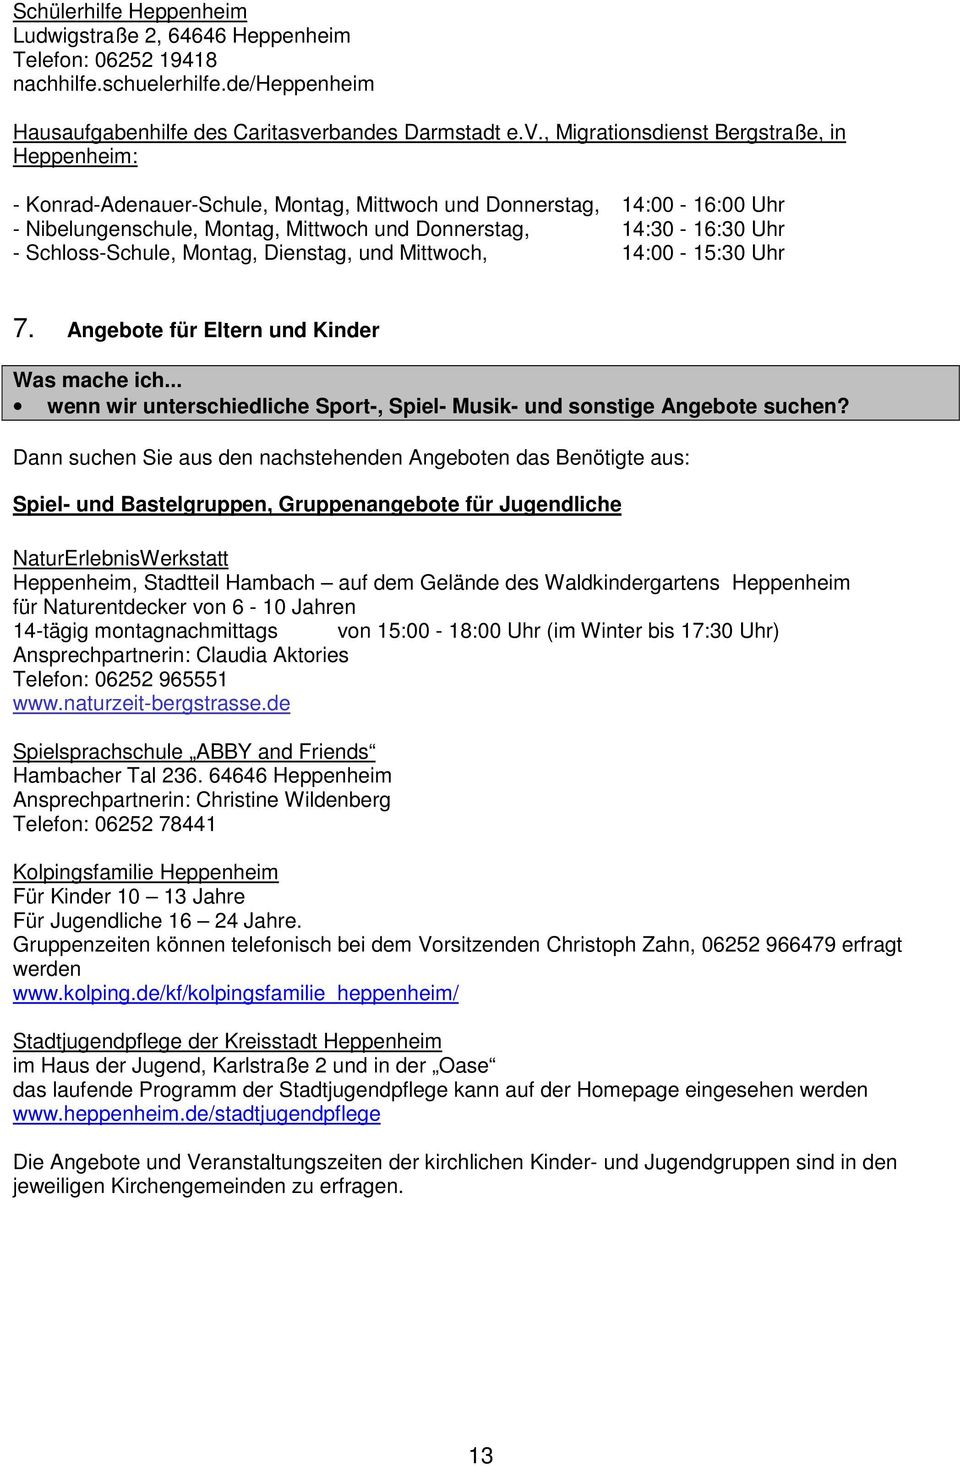 , Migrationsdienst Bergstraße, in Heppenheim: - Konrad-Adenauer-Schule, Montag, Mittwoch und Donnerstag, 14:00-16:00 Uhr - Nibelungenschule, Montag, Mittwoch und Donnerstag, 14:30-16:30 Uhr -